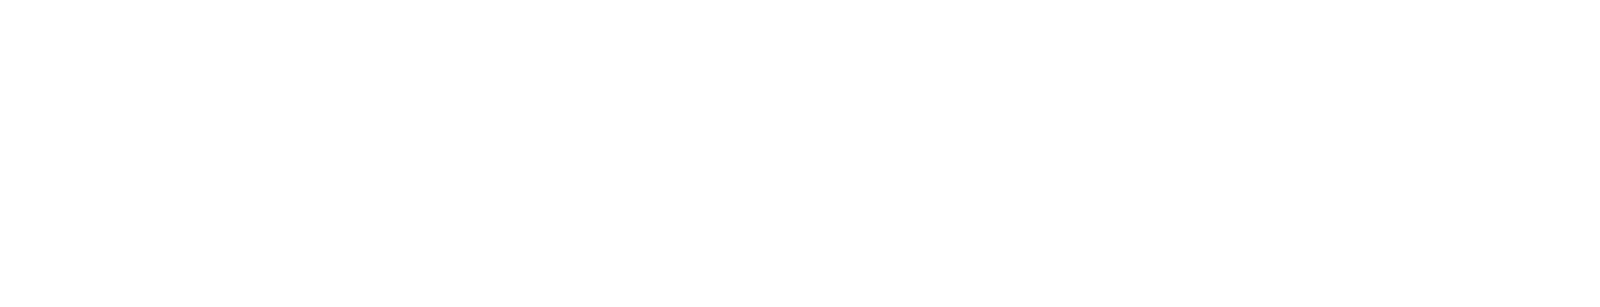 Neoen logo grand pour les fonds sombres (PNG transparent)